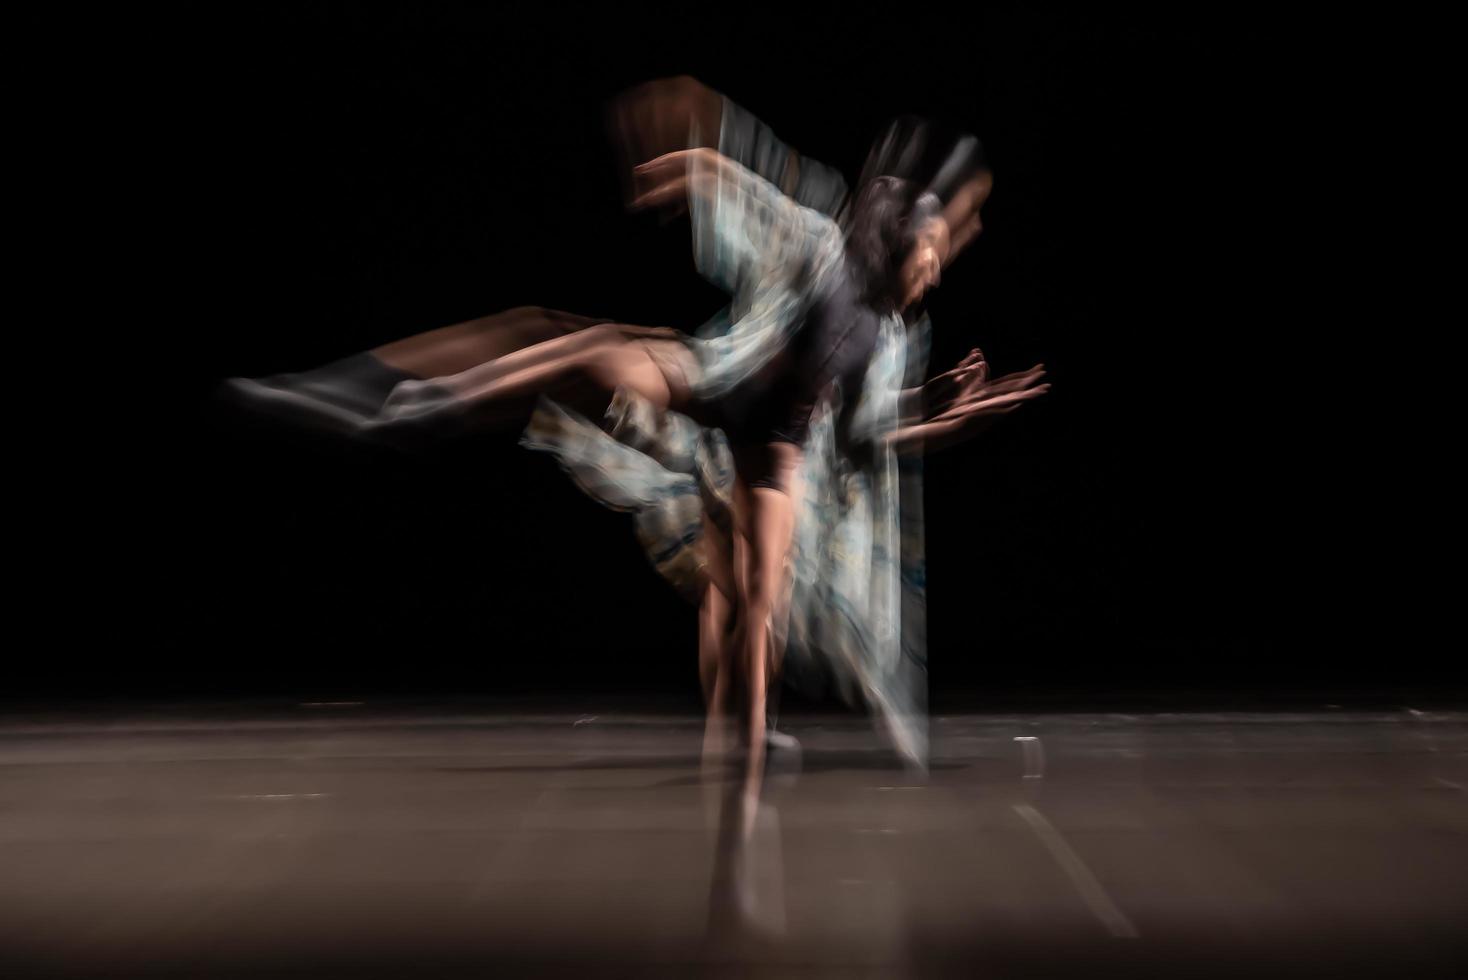 le mouvement abstrait de la danse photo